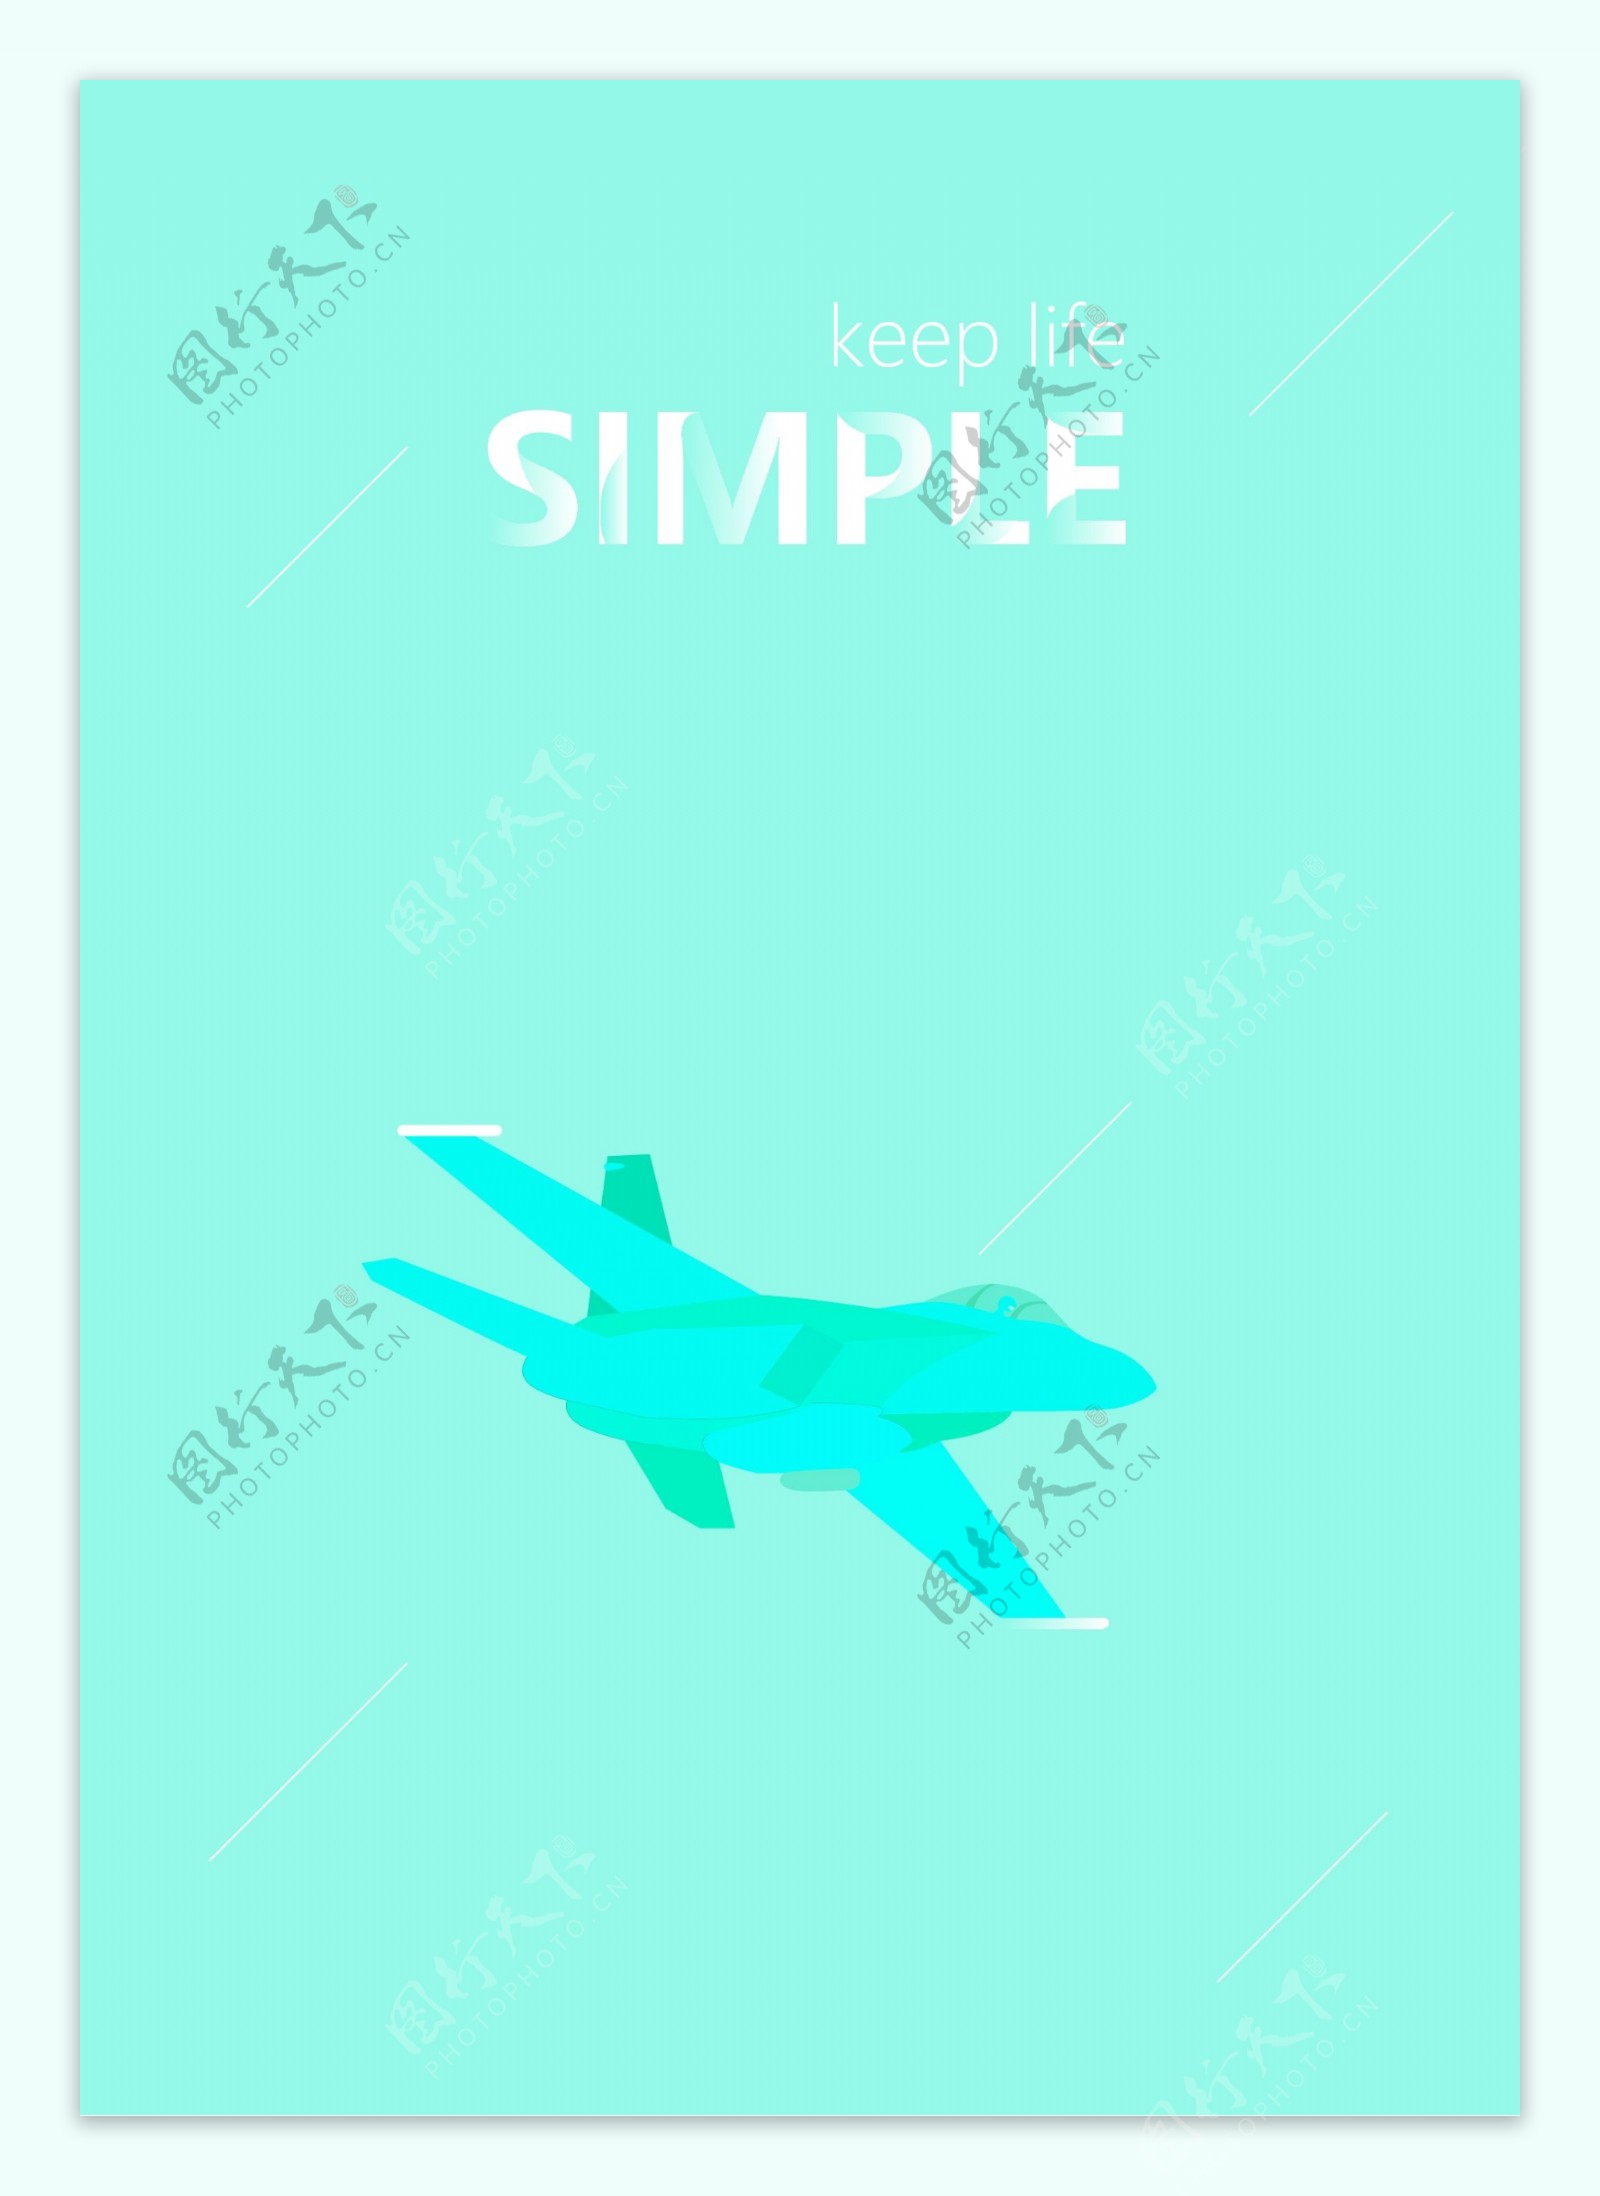 一张绿色的飞机插画海报